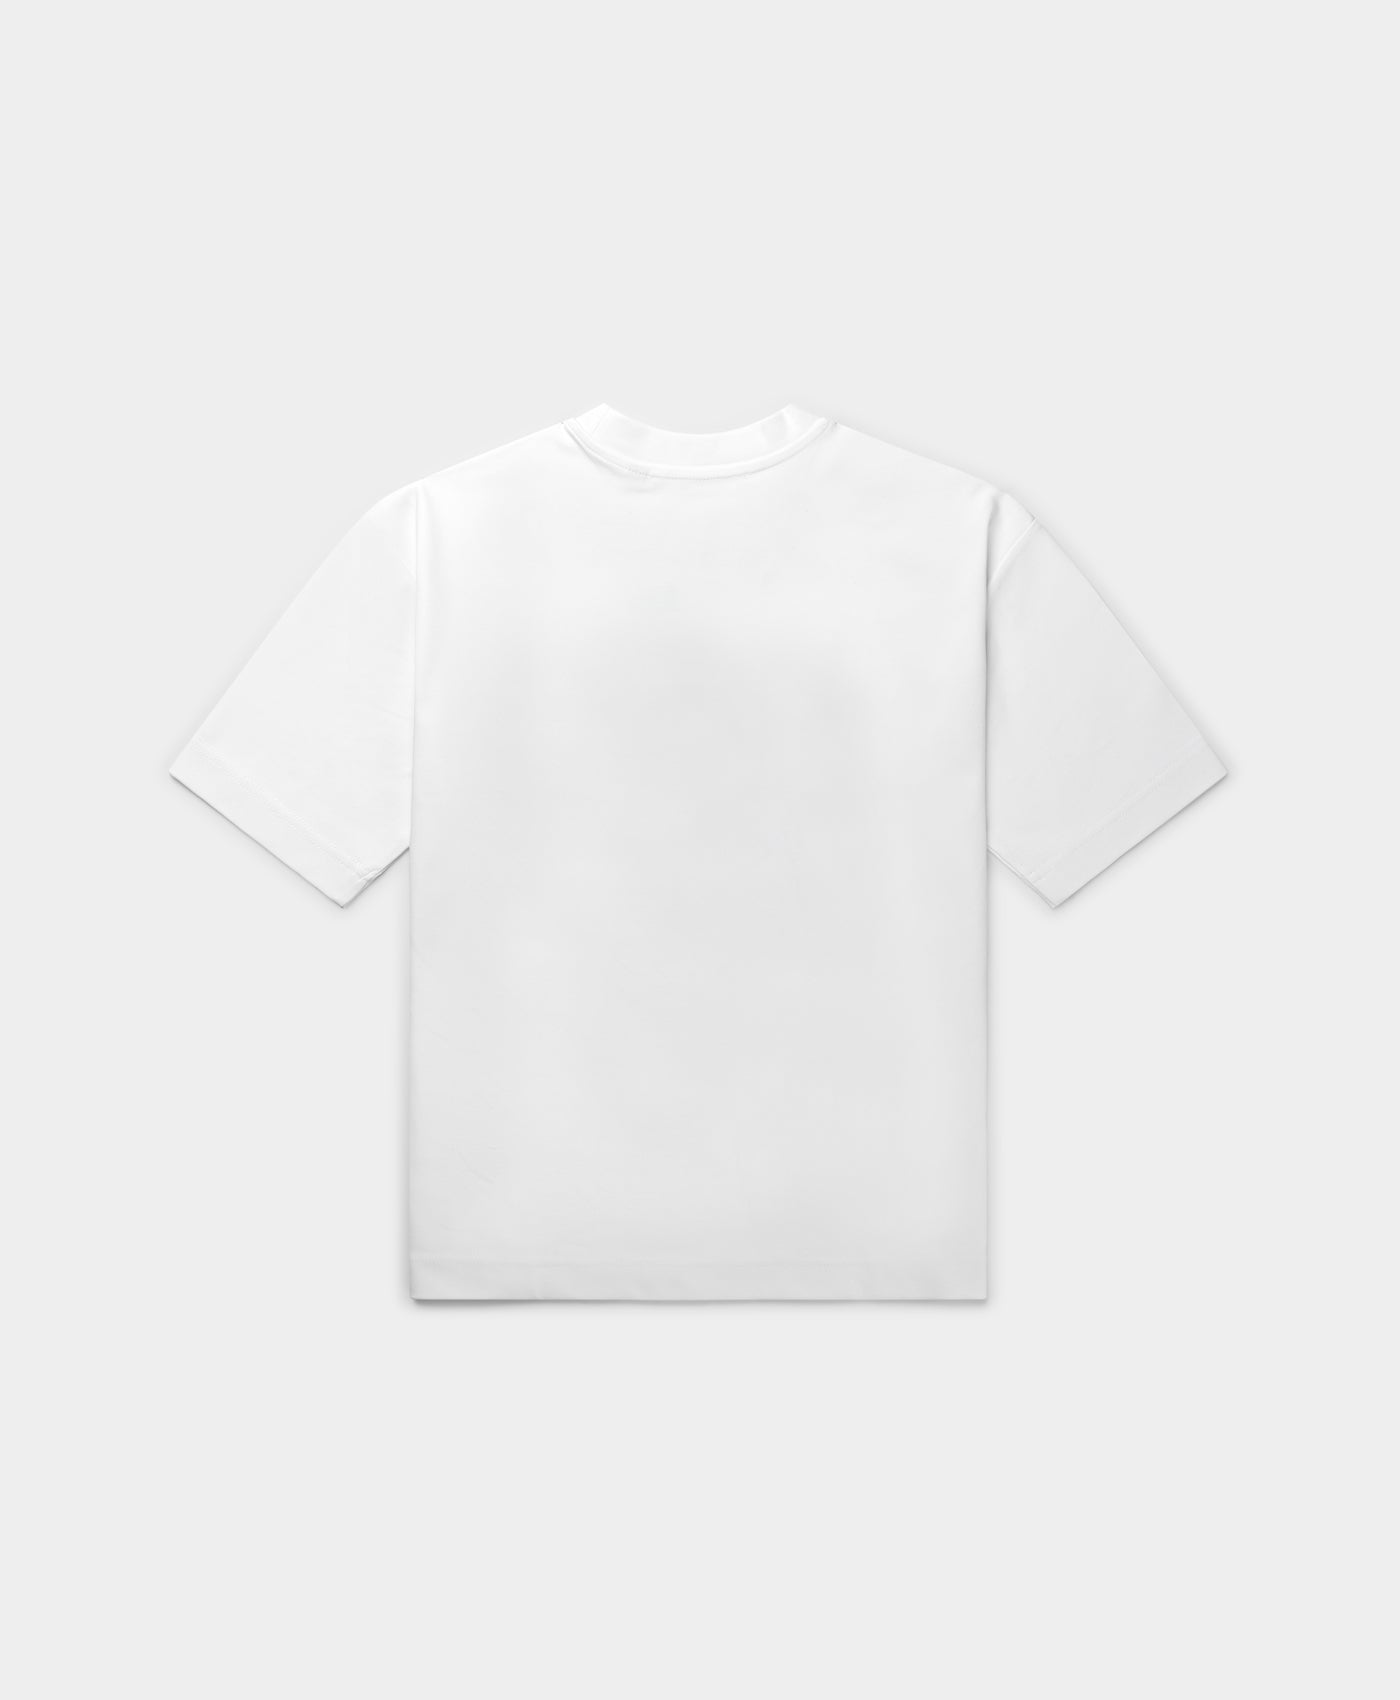 DP - White Ruhinda T-Shirt - Packshot - Rear